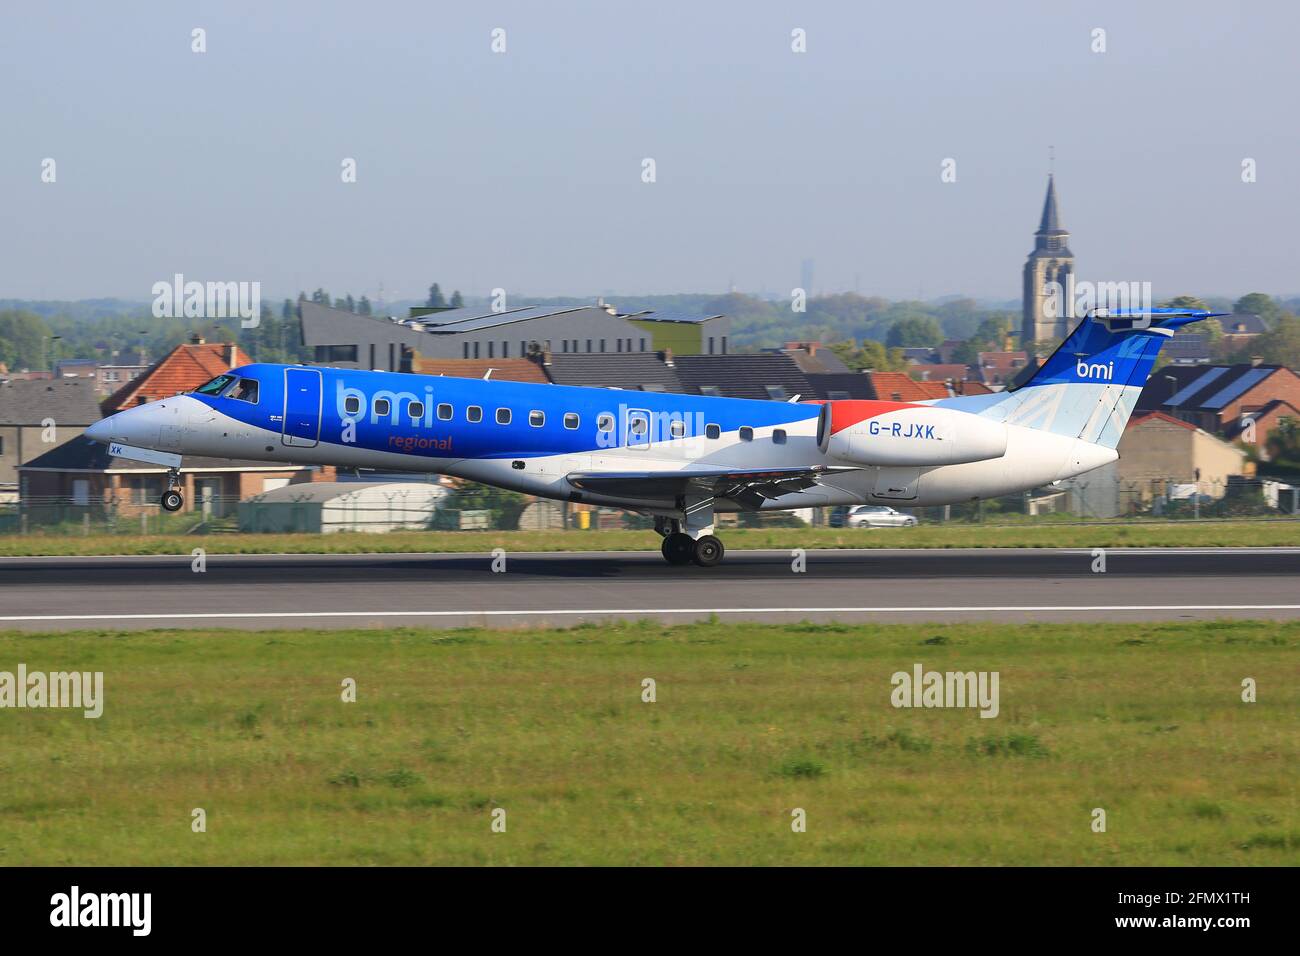 Bruxelles, Belgique – 10. Mai 2017 : BMI Regional Embraer 135 à l'aéroport de Bruxelles (BRU) en Belgique. Embraer est un fabricant d'avions basé au Brésil. Banque D'Images